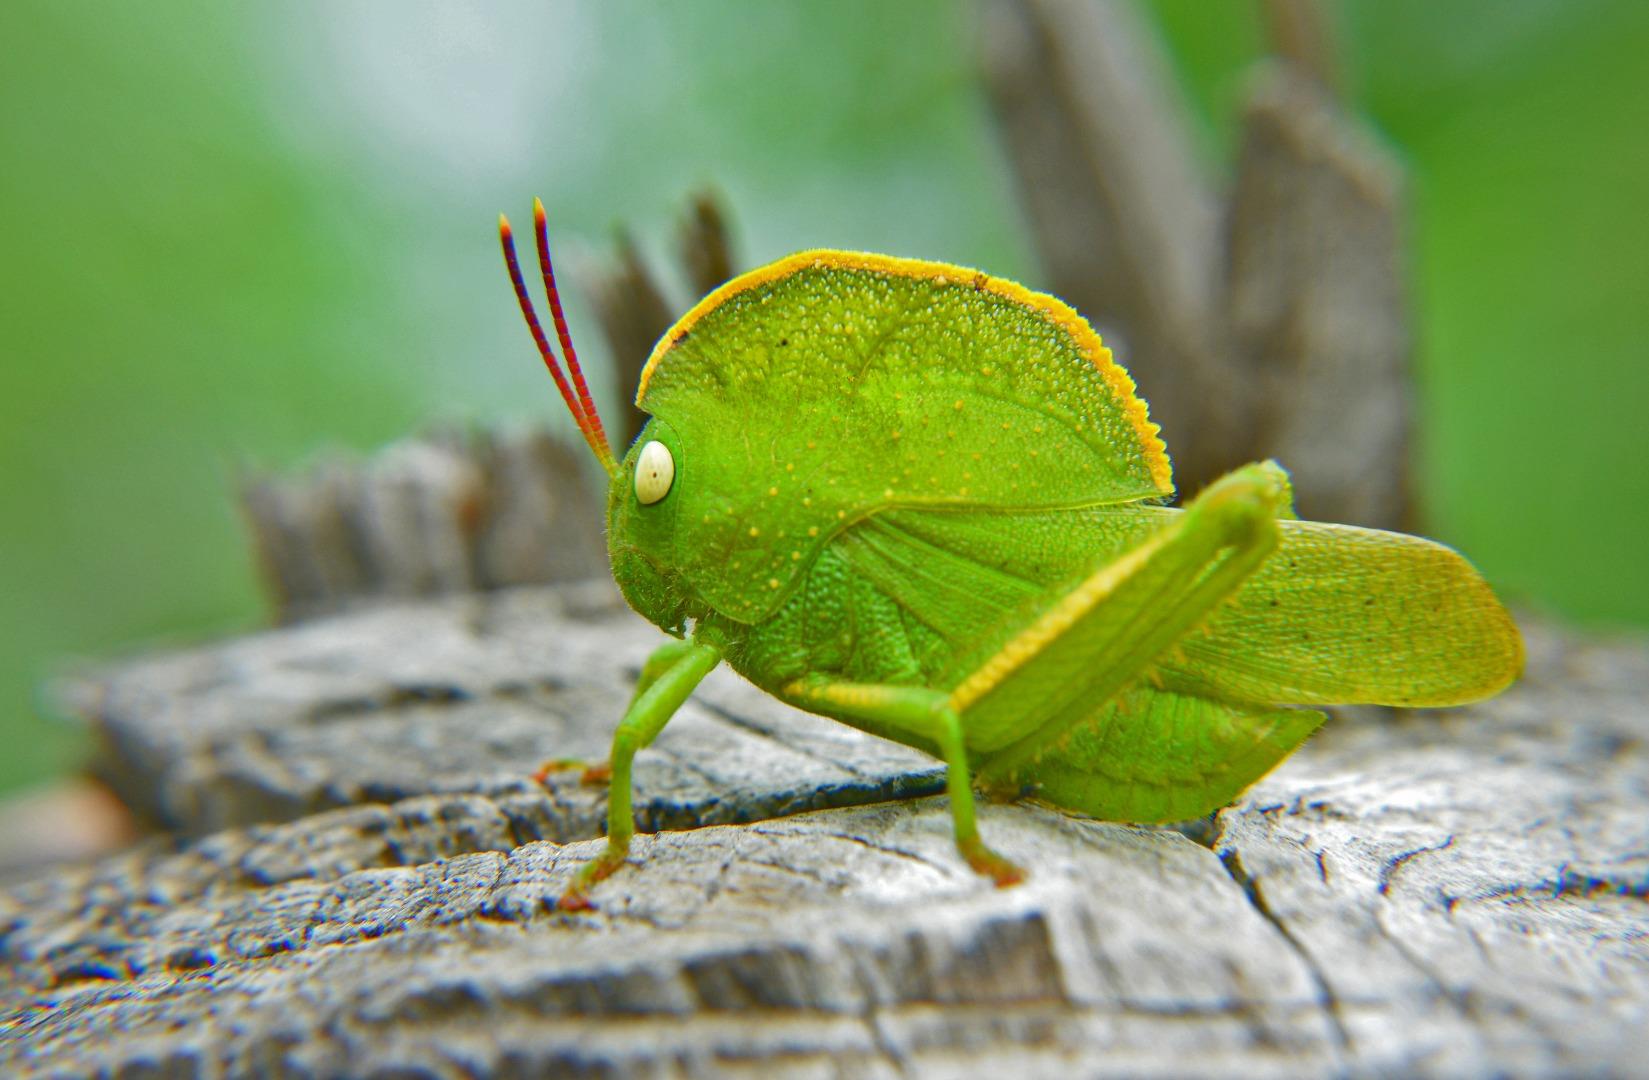 Hoded grasshopper